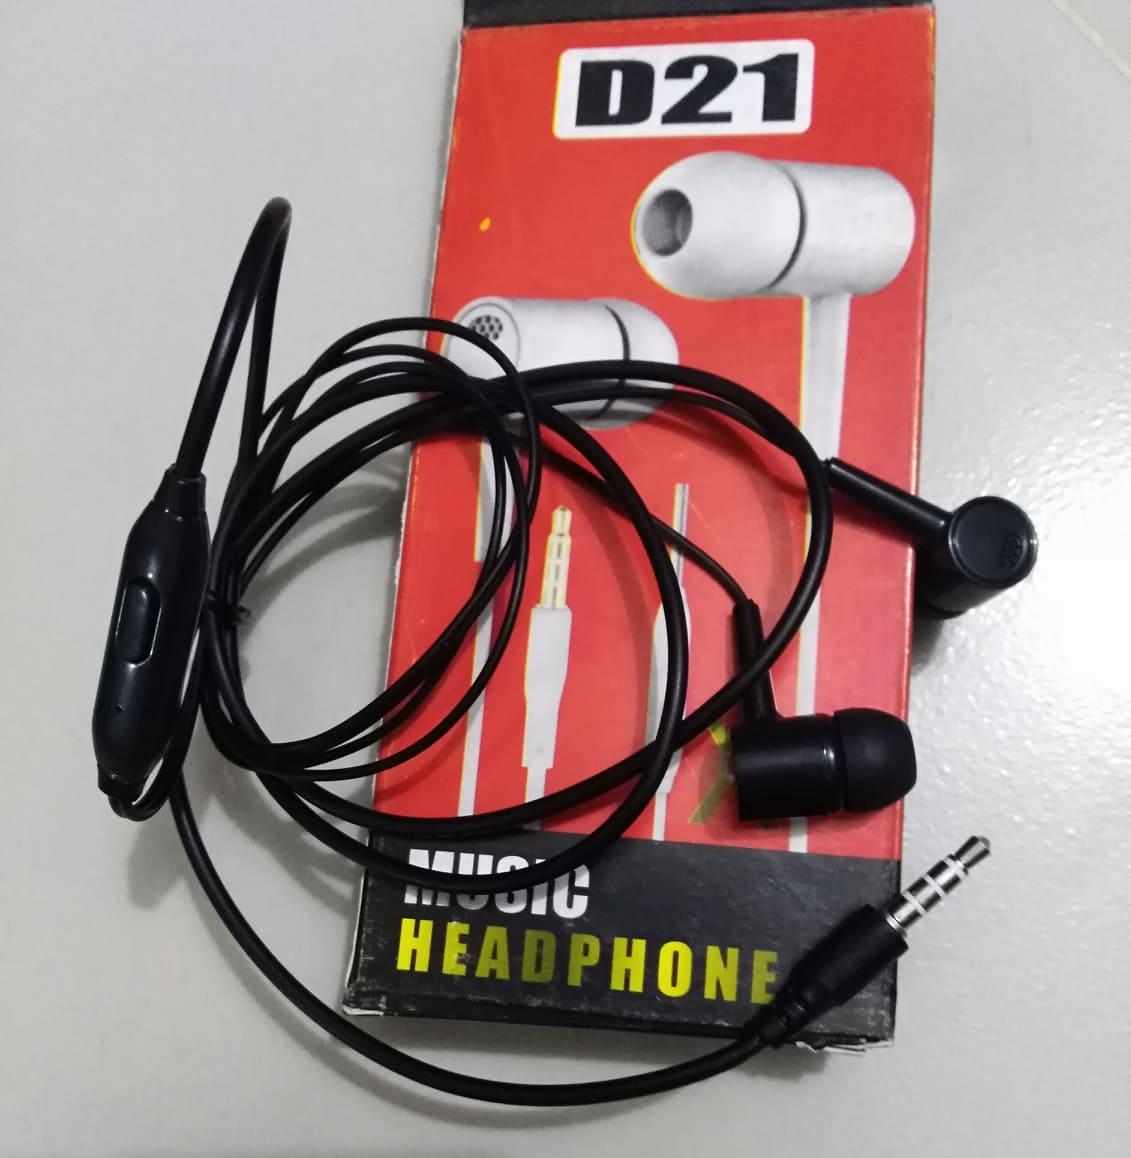 ডি-২১ এয়ারফোন (Headphone)